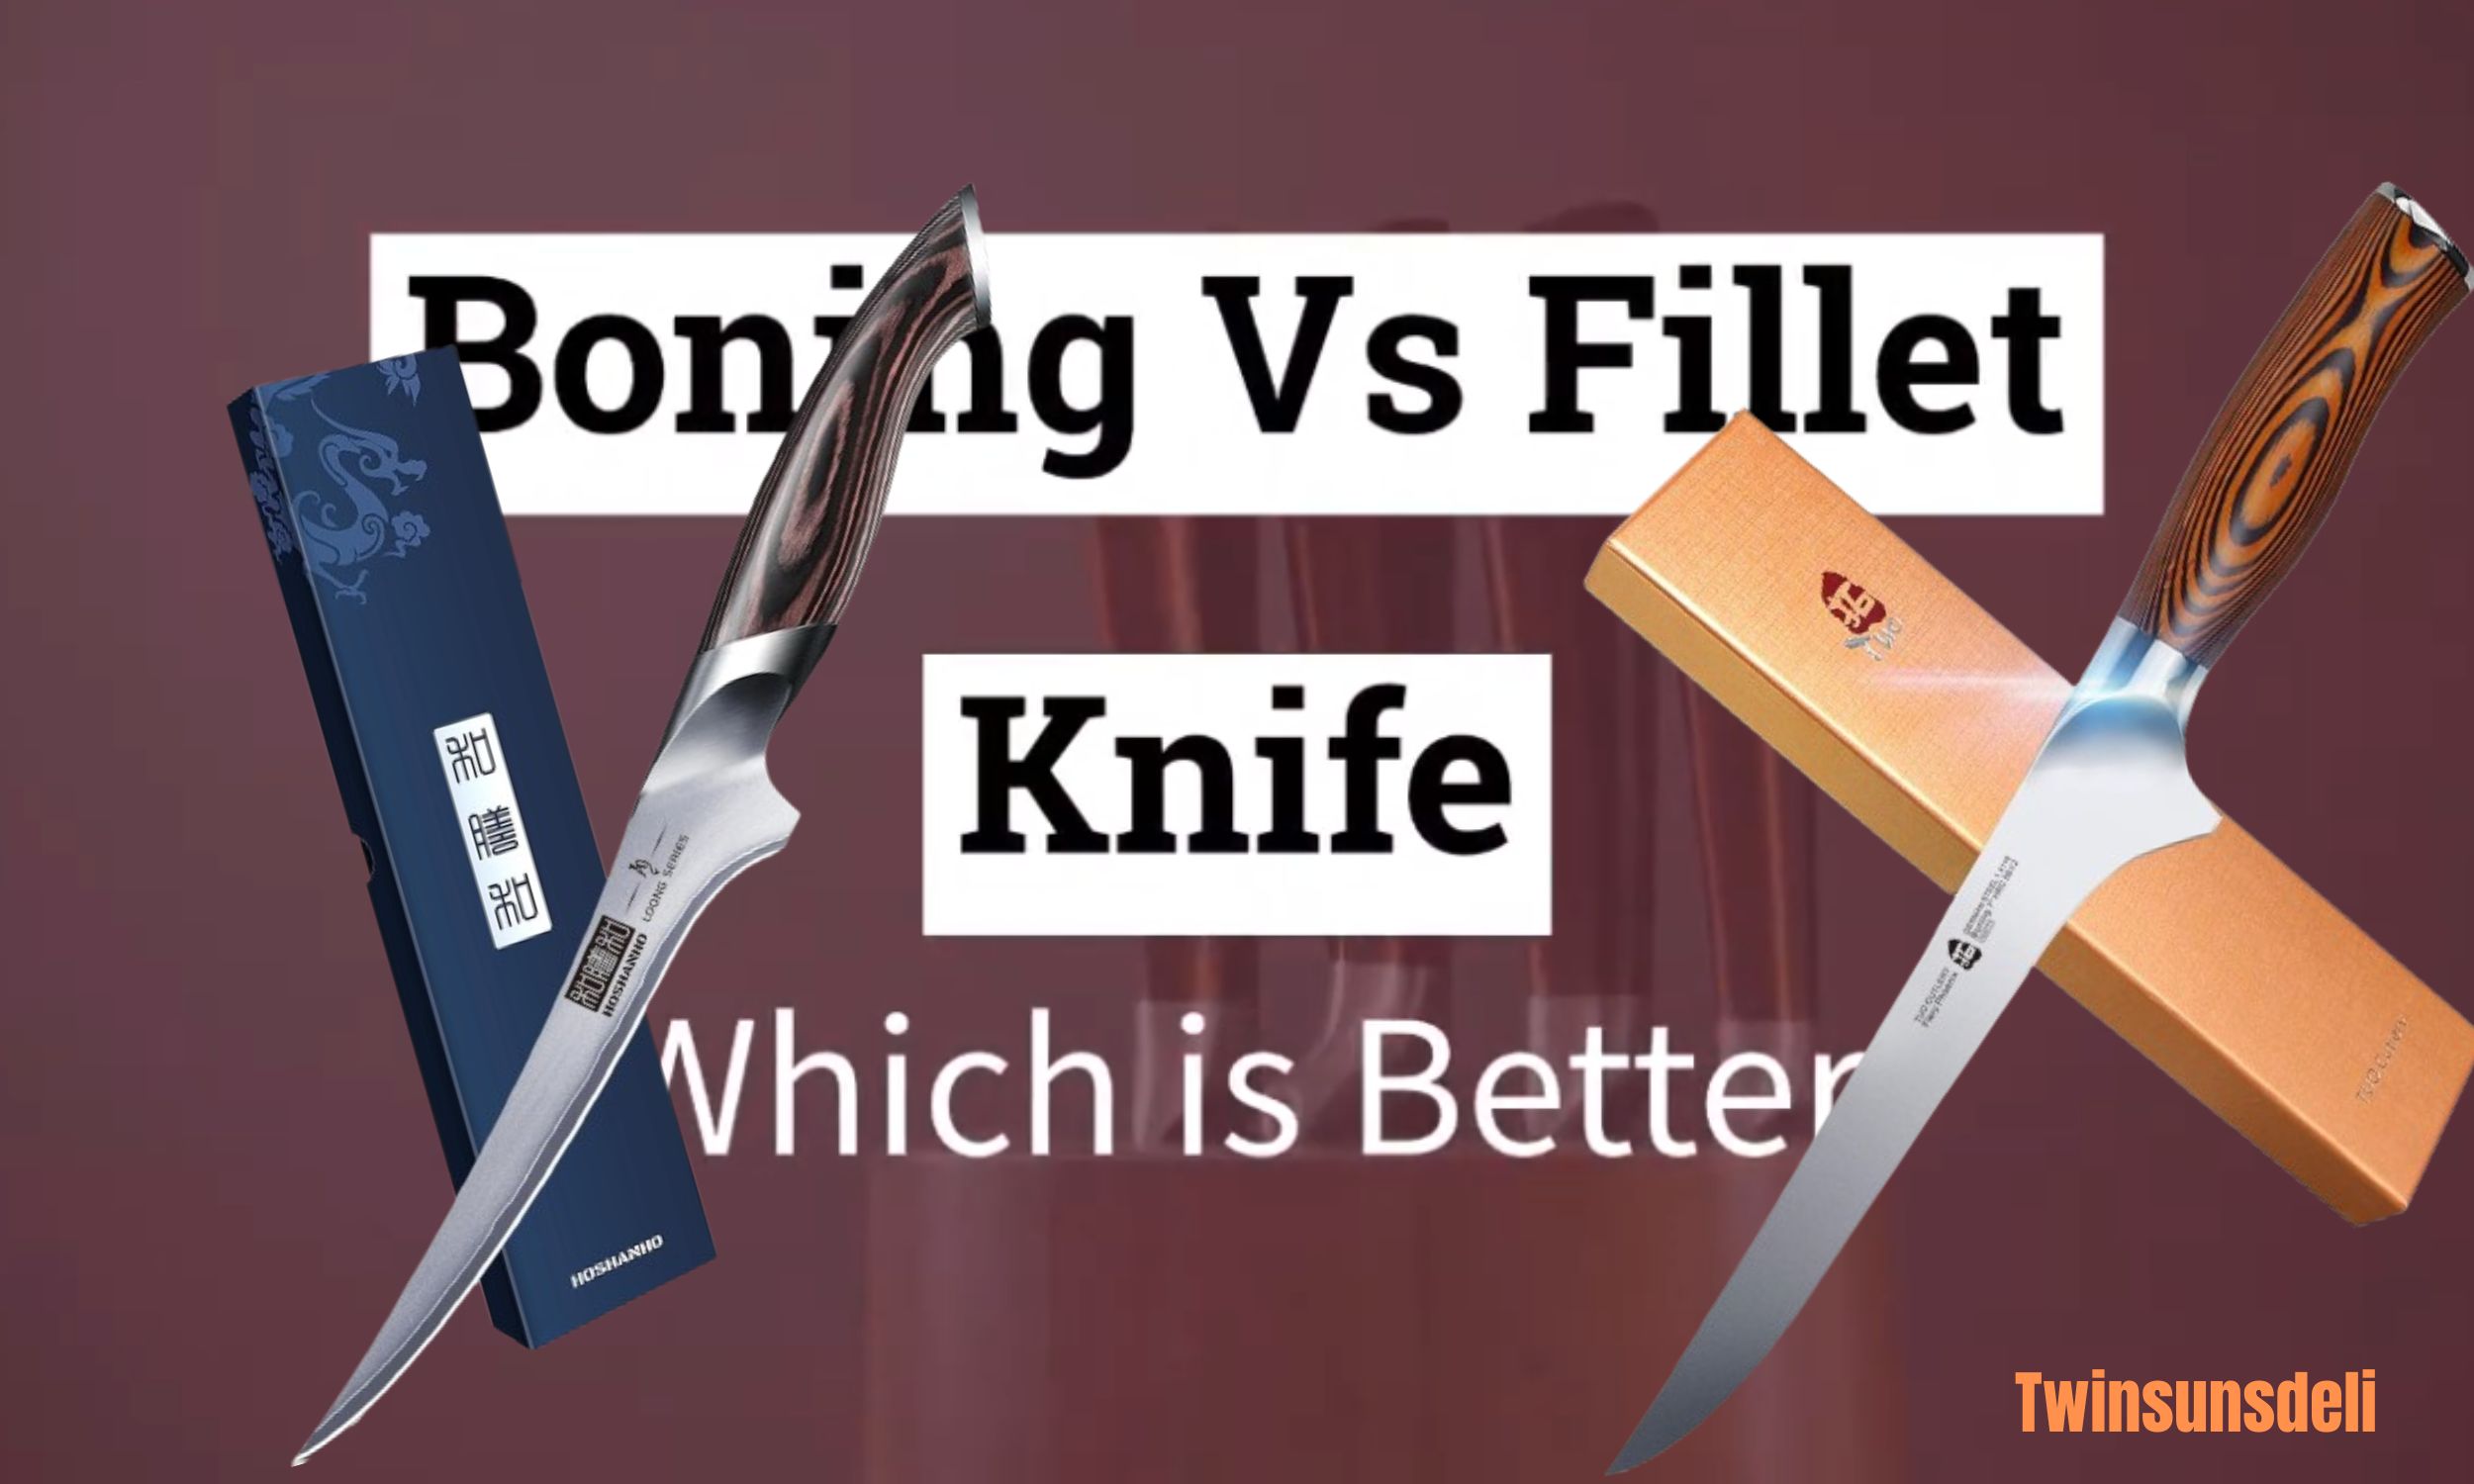 Boning knife vs fillet knife